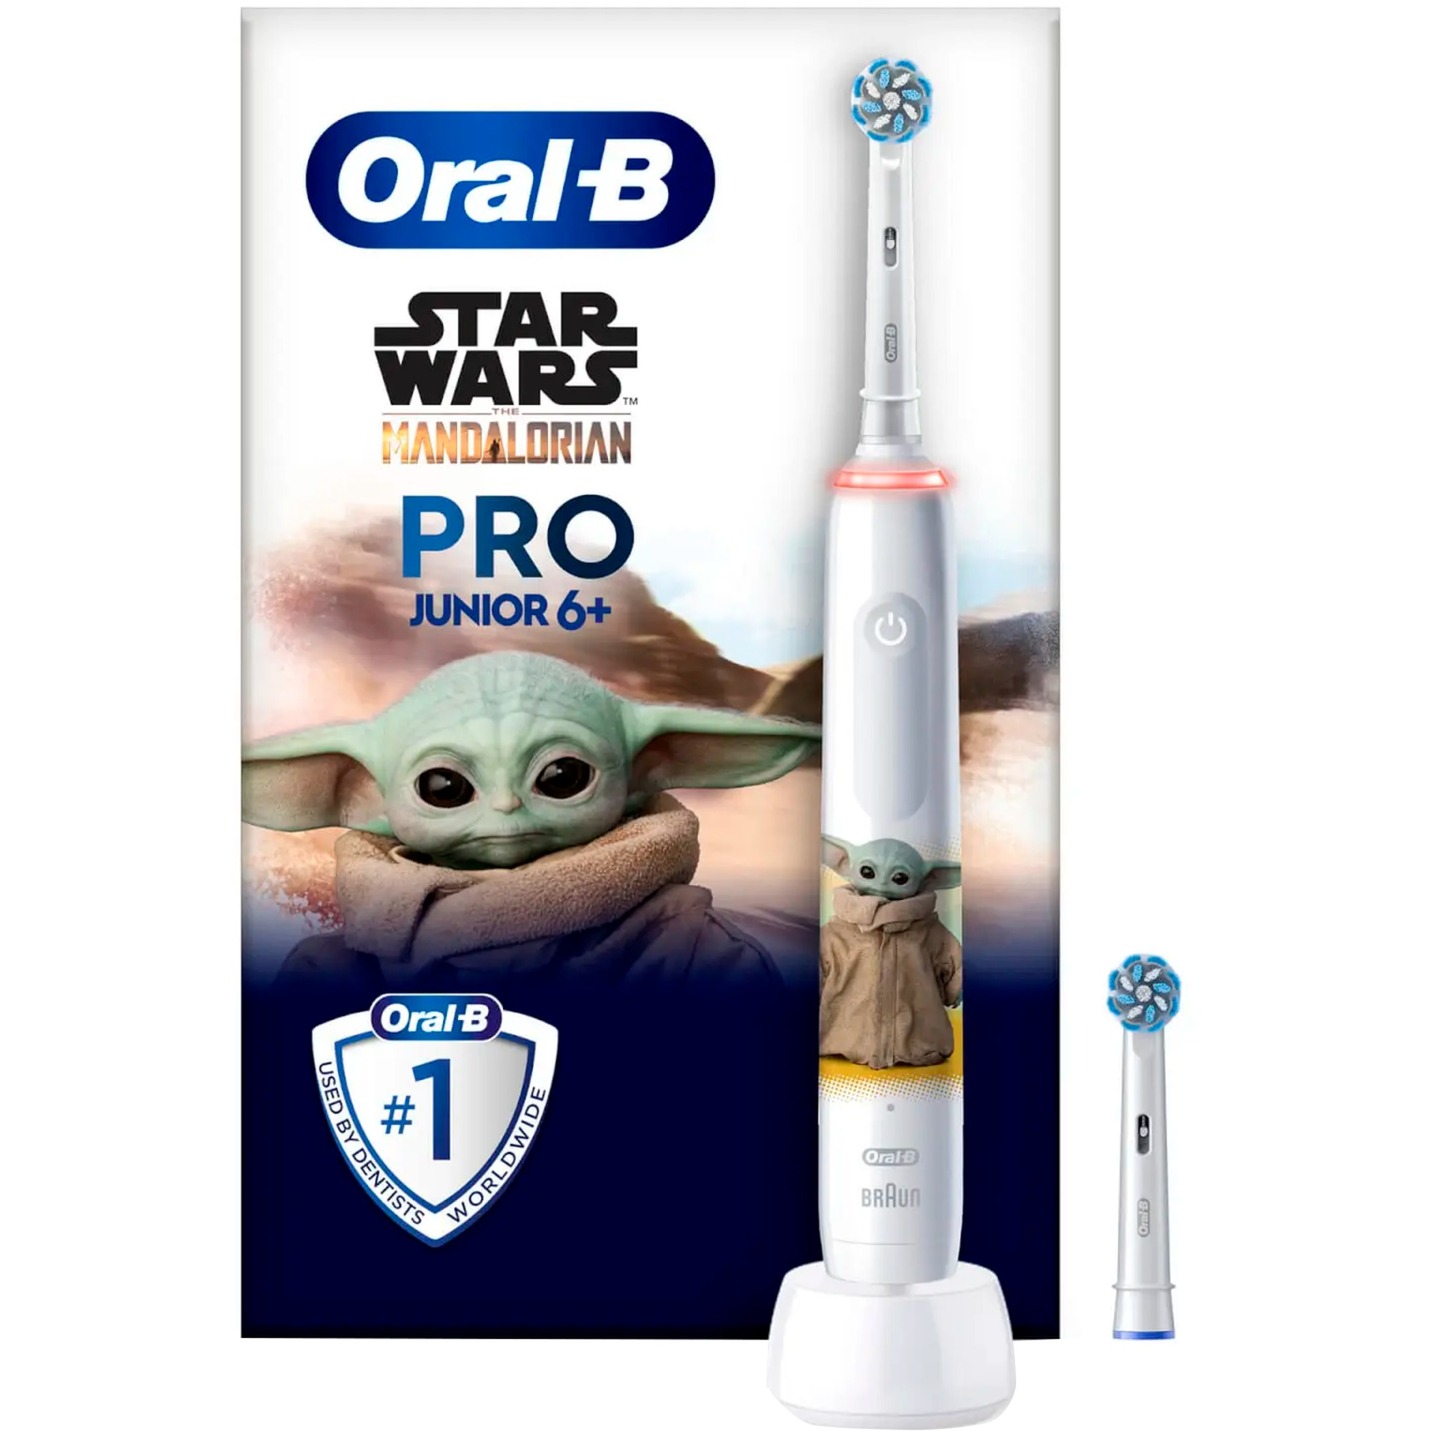 Oral-B Pro Junior1 Star Wars Griff, 2 elektrische Zahnbürsten, ab 6 Jahren